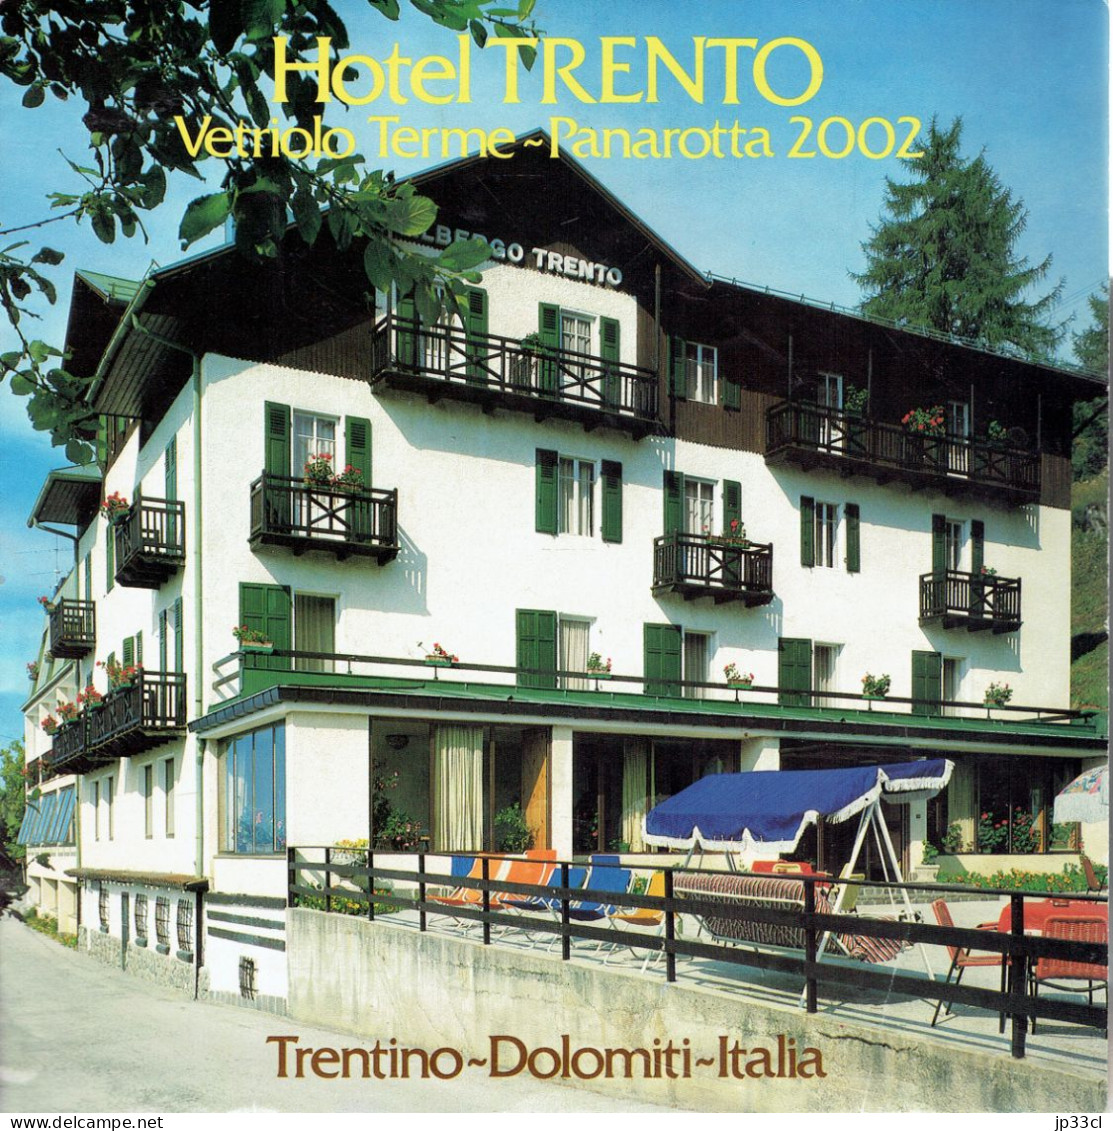 Dépliant Sur L'Hôtel Trento Vetriolo Terme - Panarota 2002, Dolomiti (en Français, Italien, Allemand Et Anglais) - Toeristische Brochures